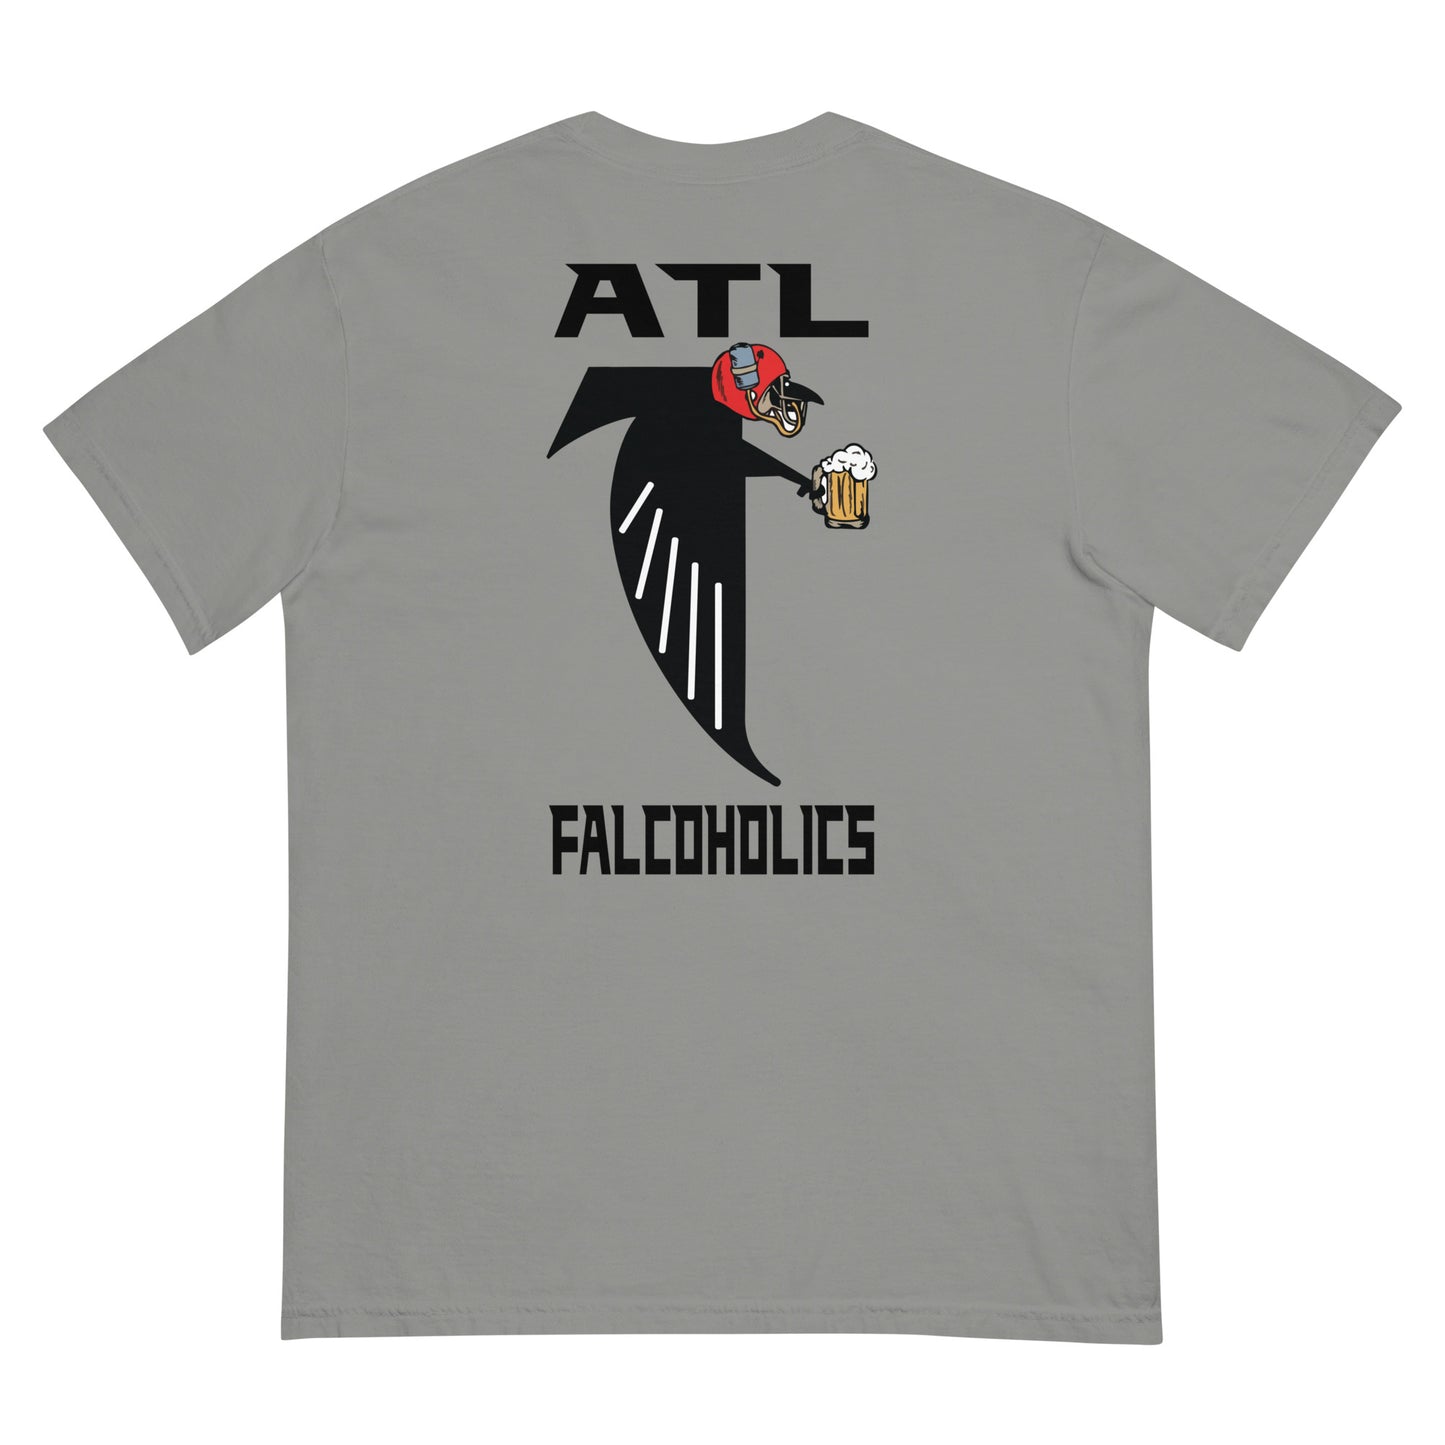 ATL Falcoholics